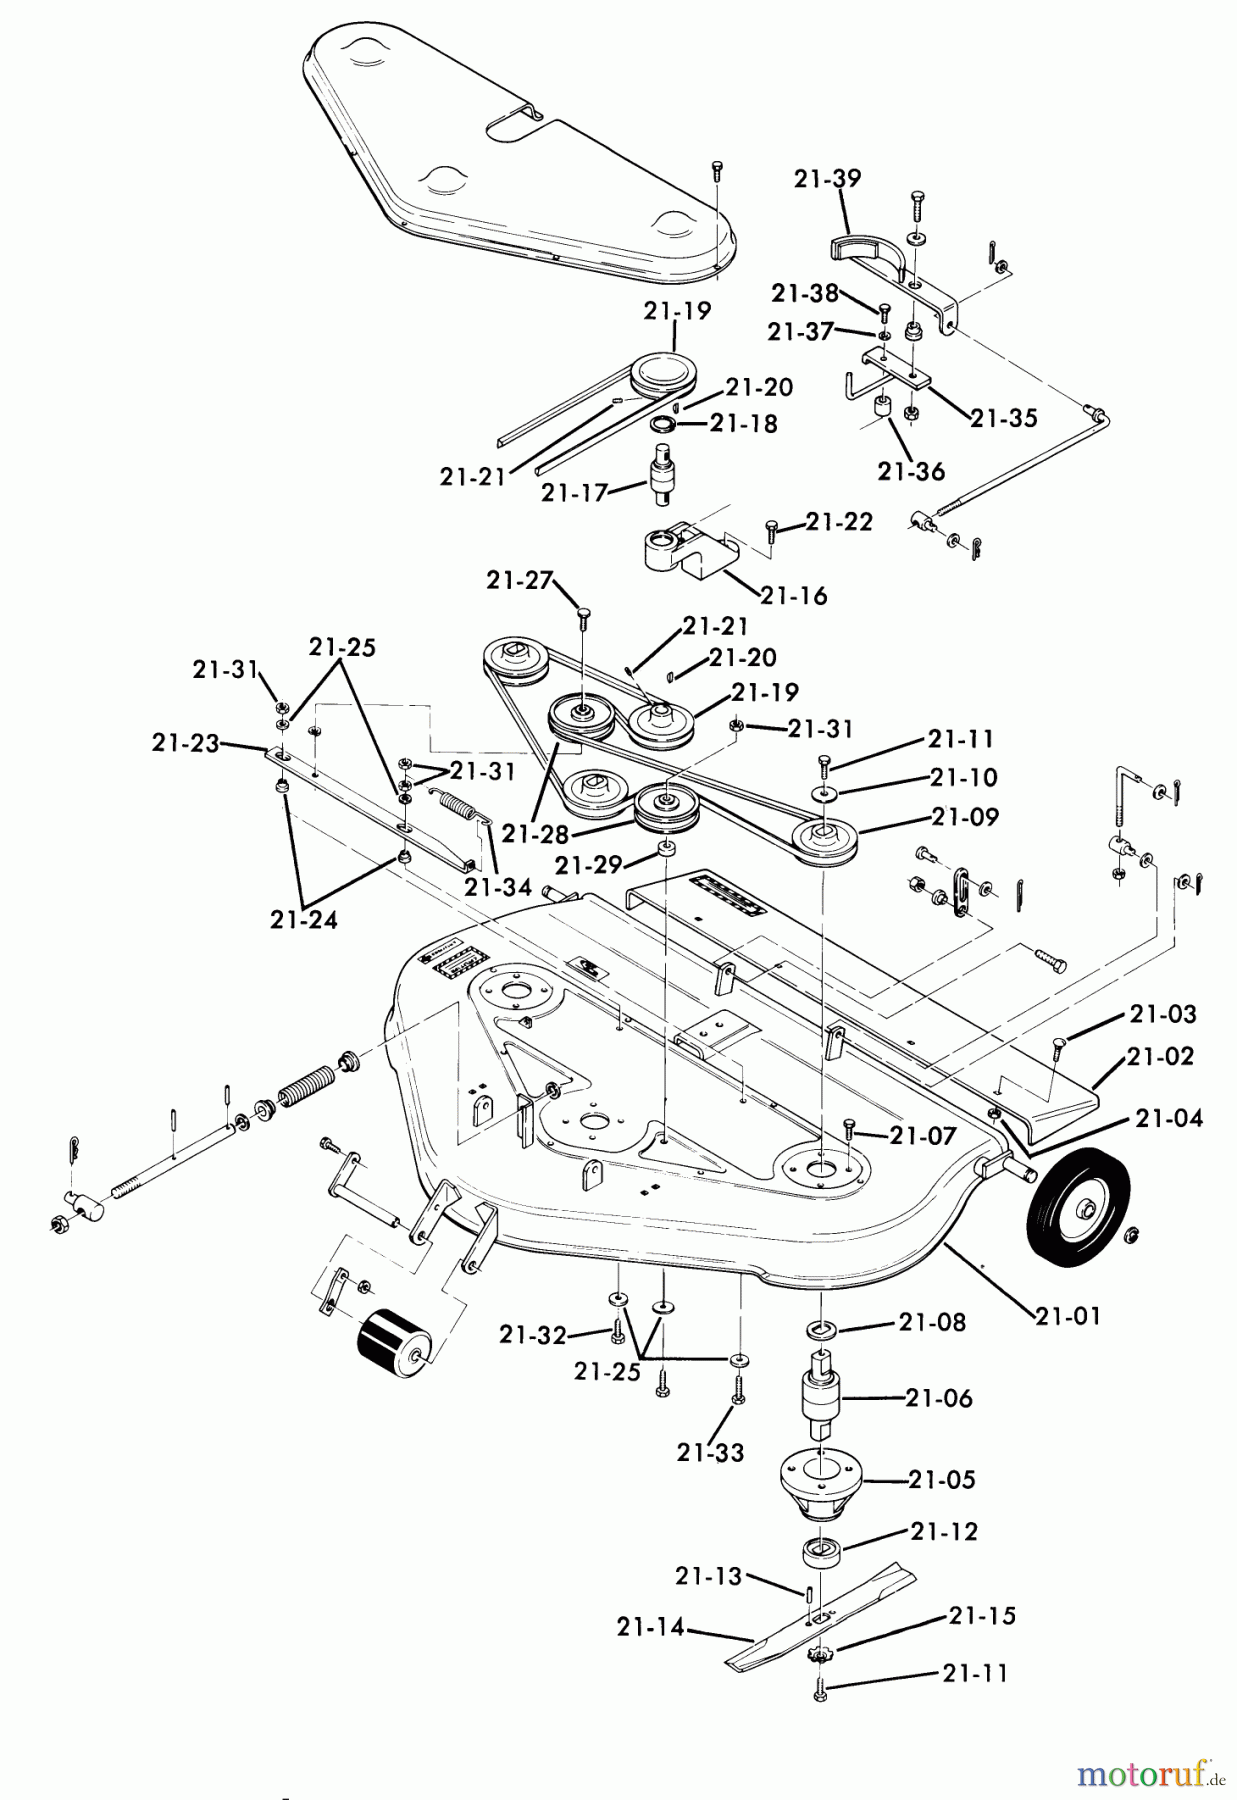  Toro Neu Mowers, Lawn & Garden Tractor Seite 1 62-10BP01 (A-100) - Toro A-100 36